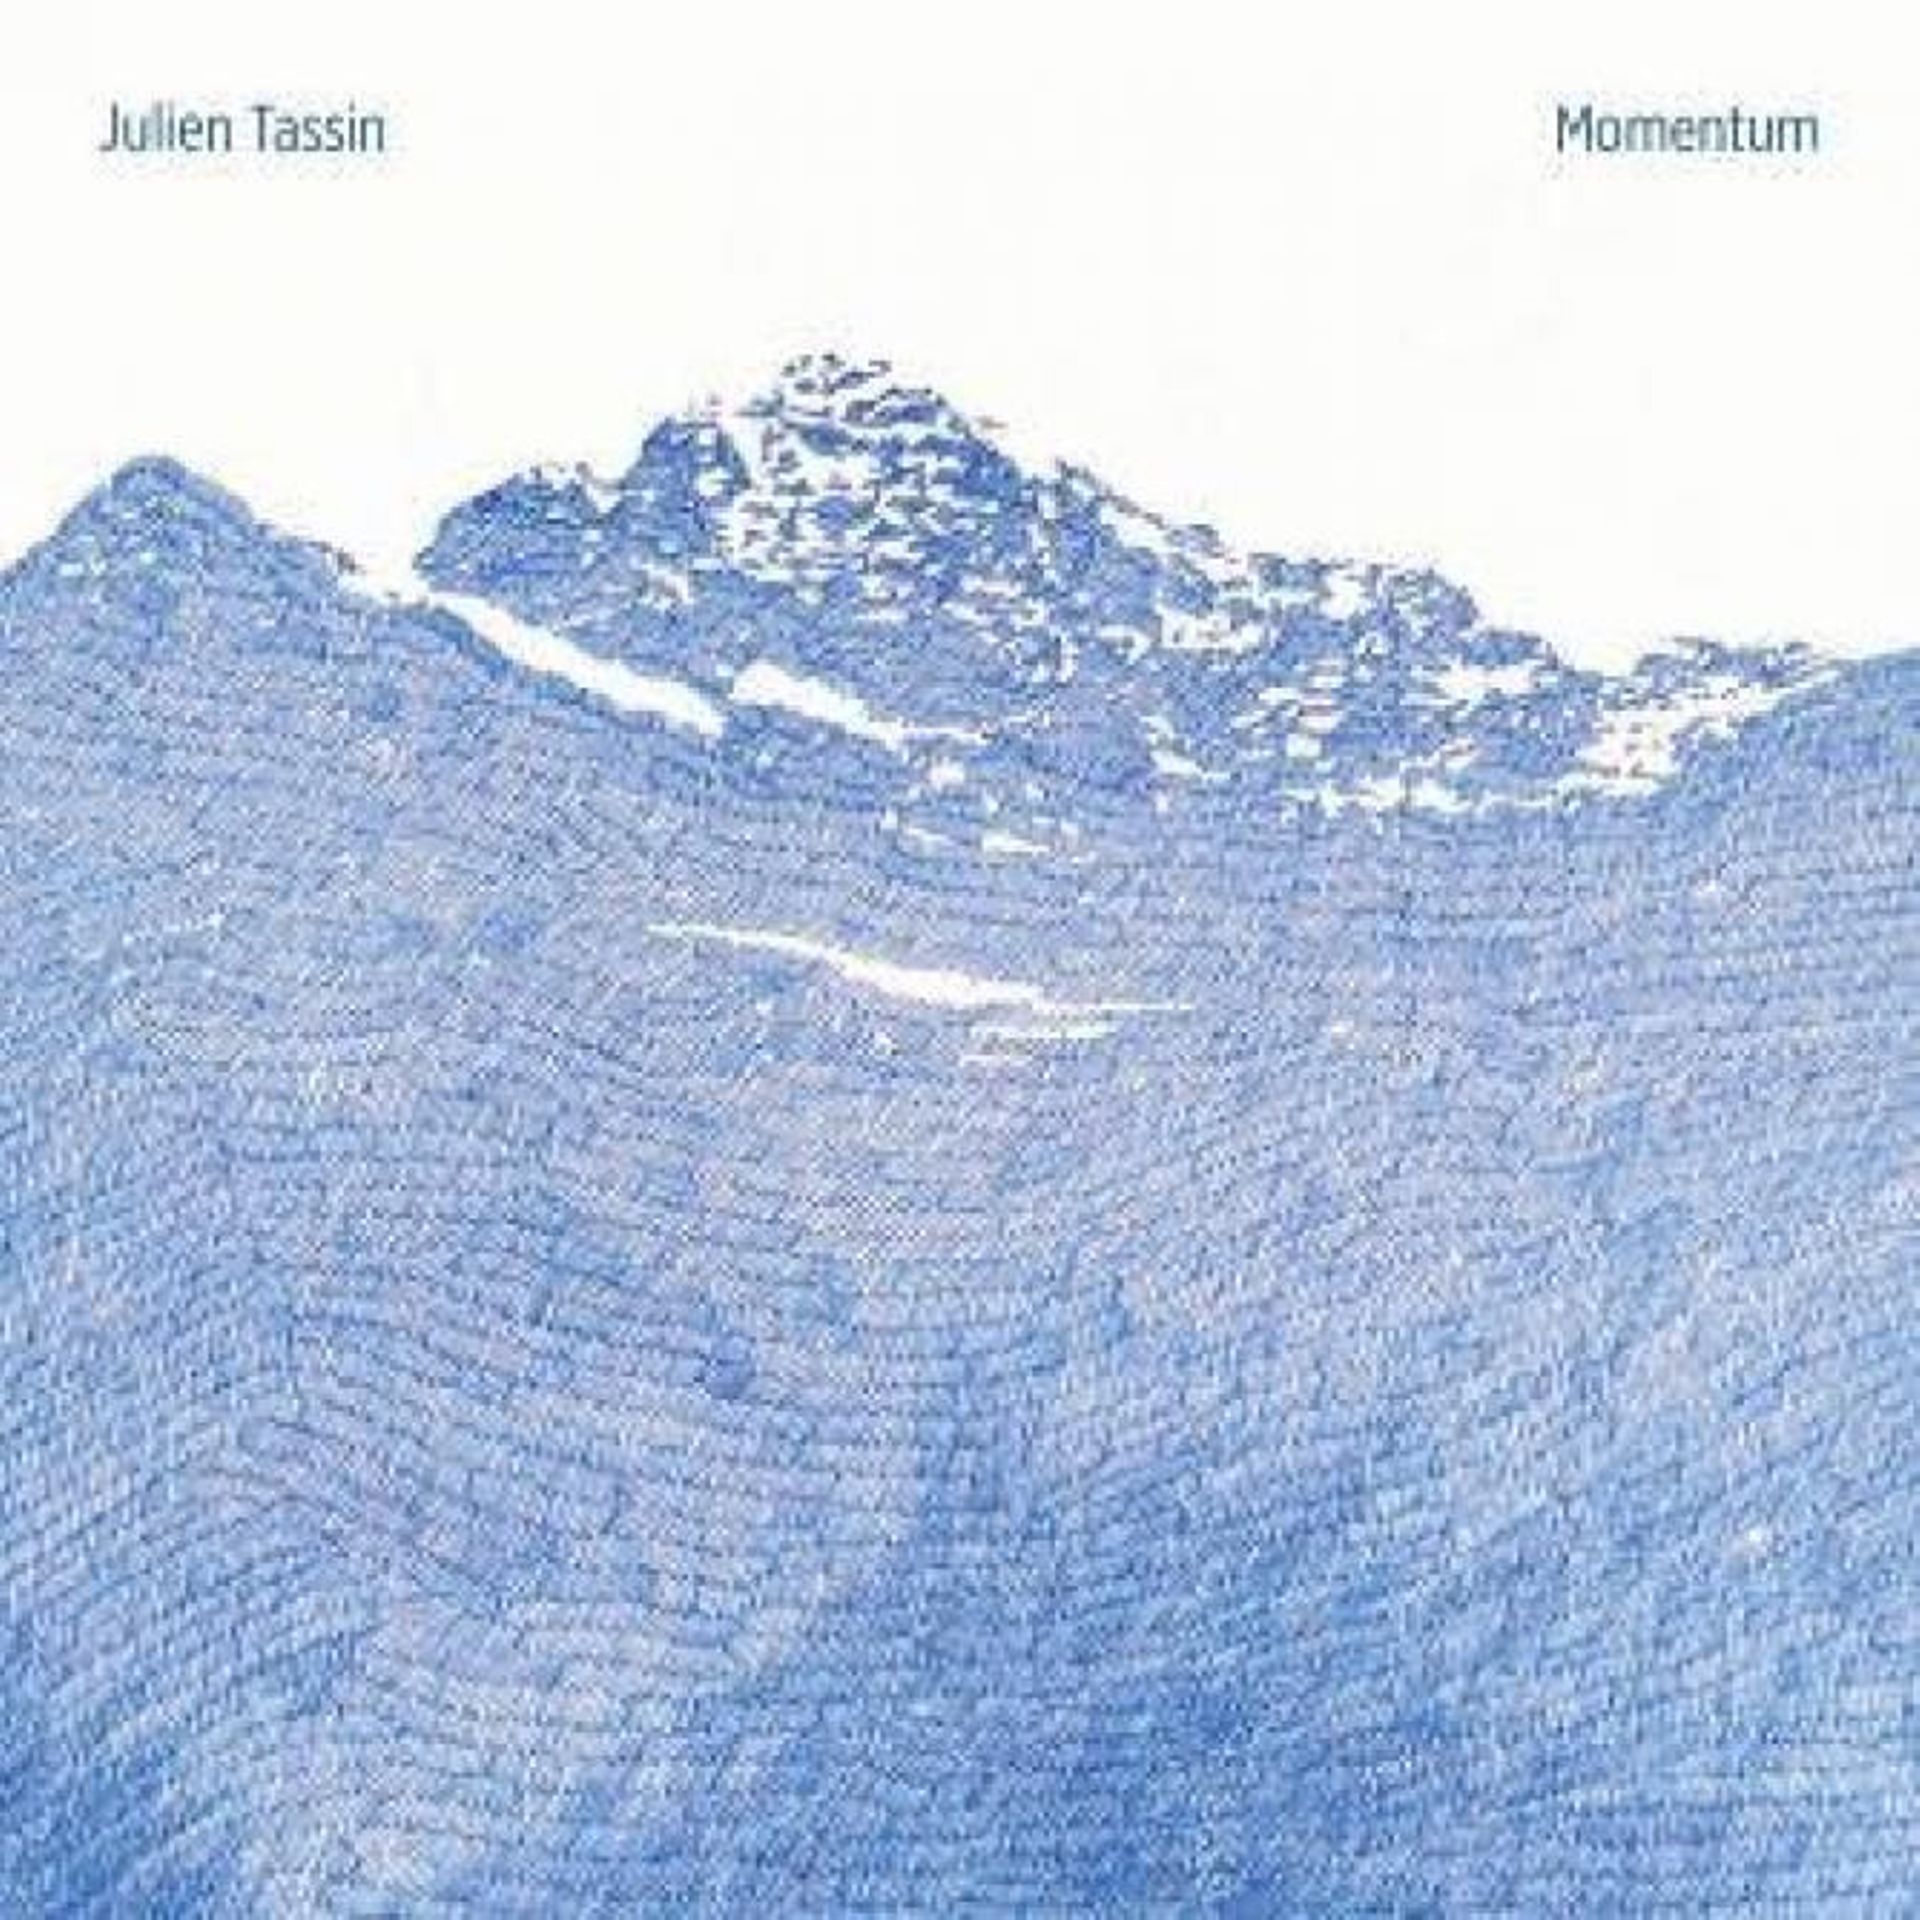 Julien Tassin : "Momentum" (2019)